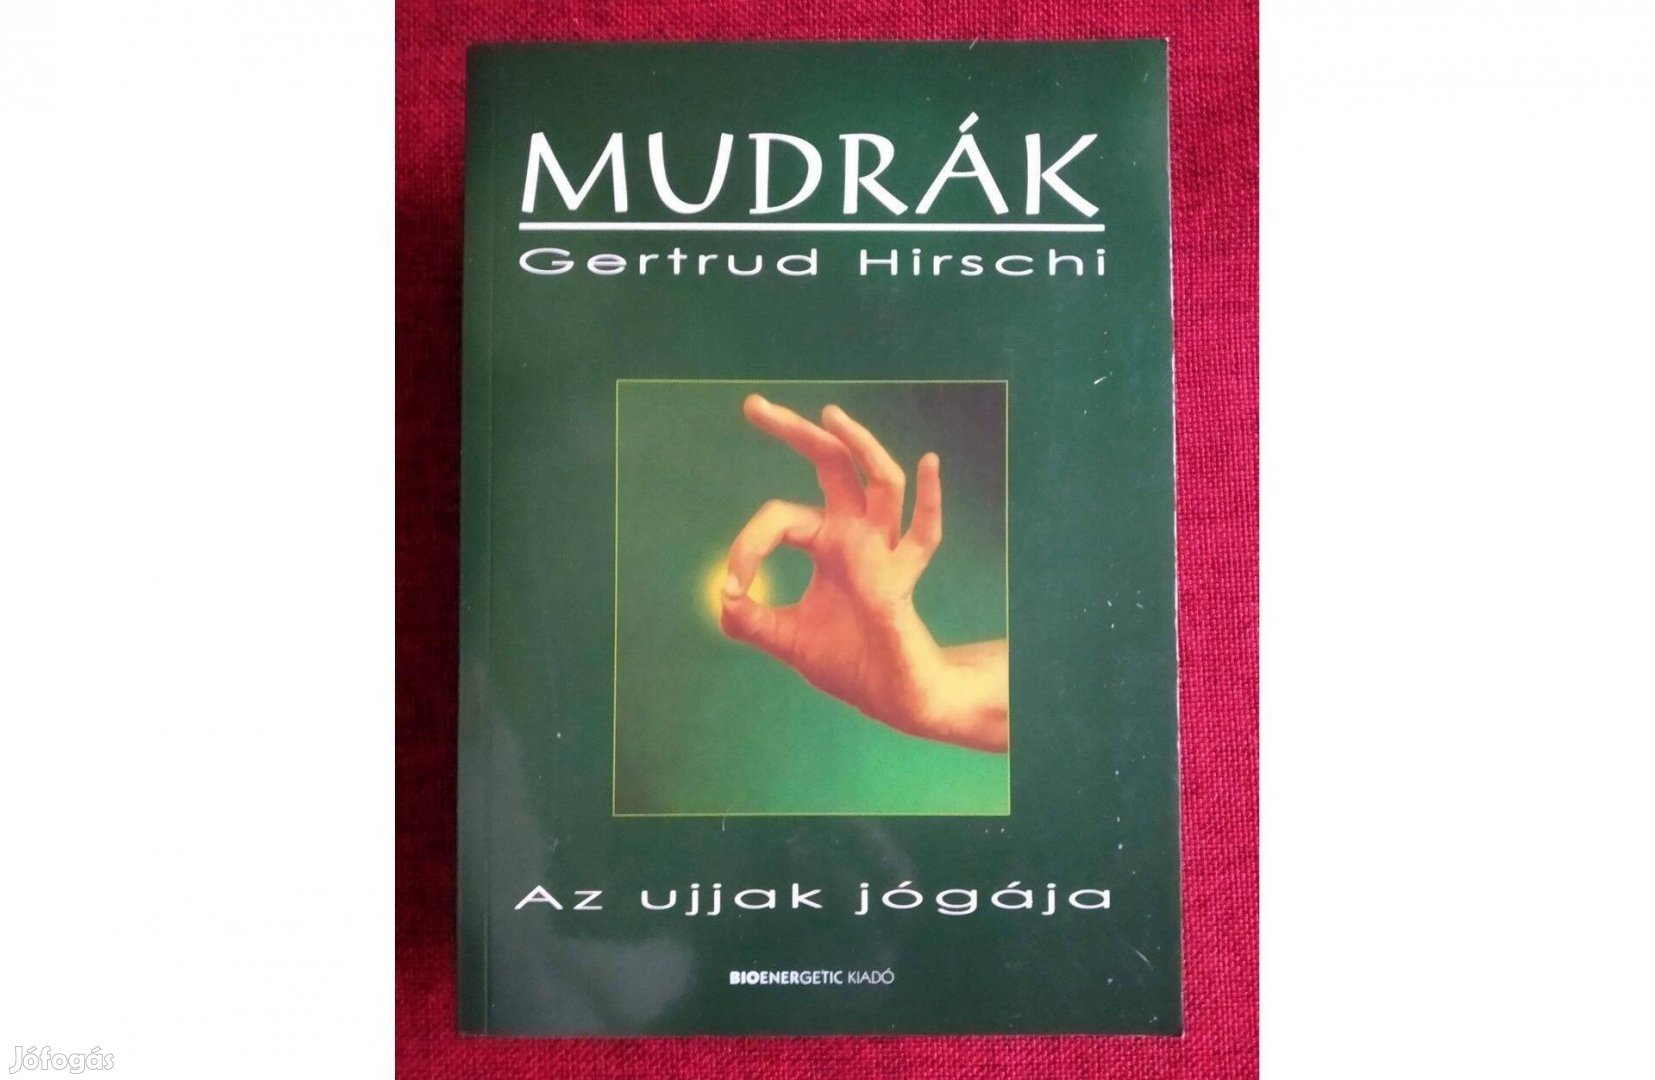 Mudrák - Az ujjak jógája Gertrud Hirschi A keleti gyógyításból ismert